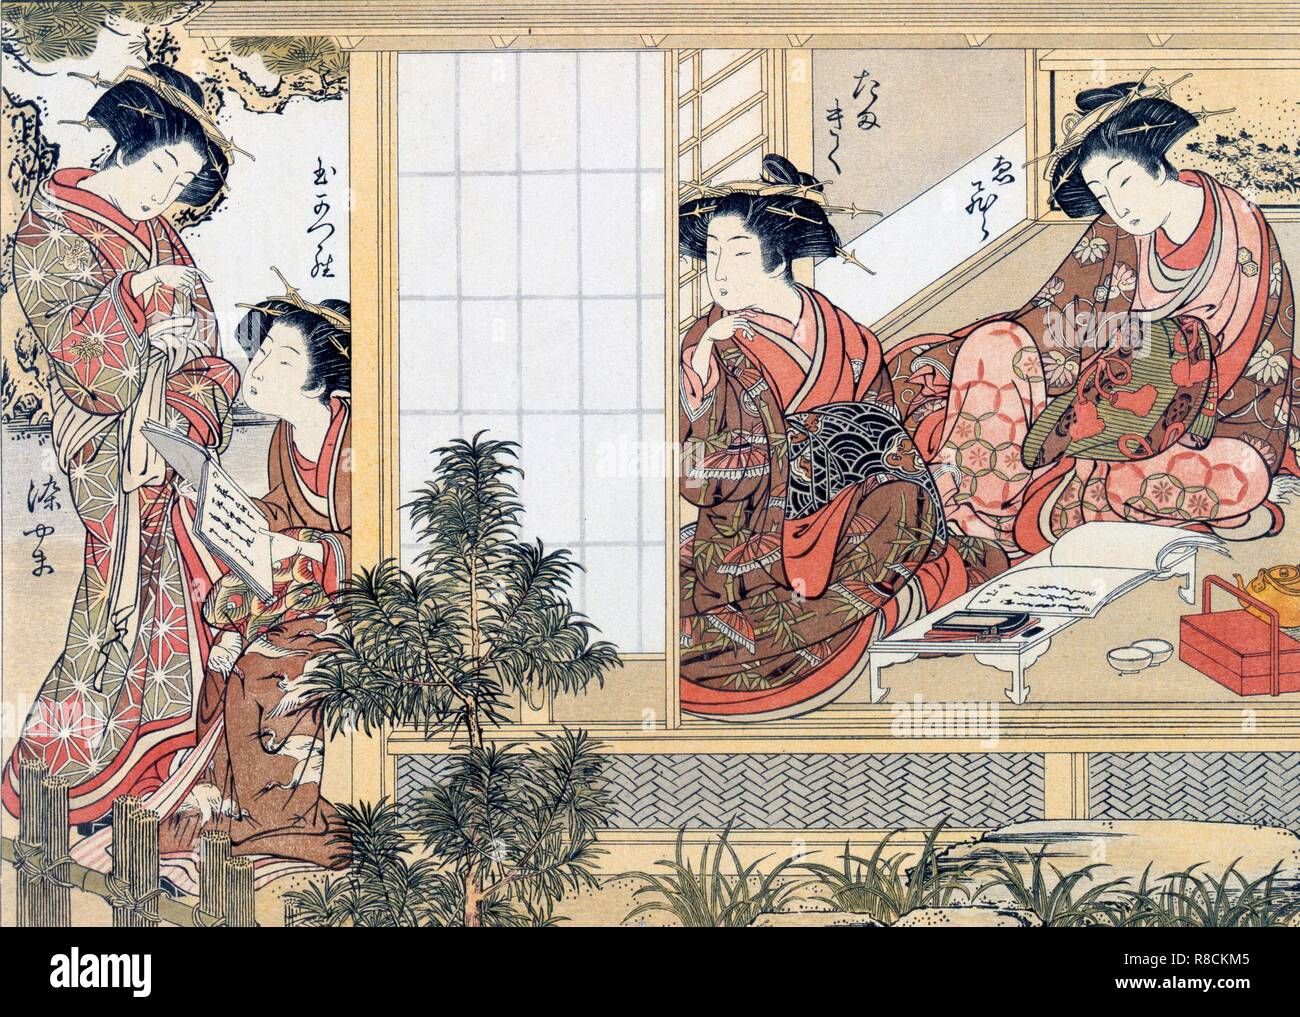 Hembra cortesanas japonesas la lectura y la escritura, c1776. Creador: Katsukawa Shunsho (1726-93) después. Foto de stock